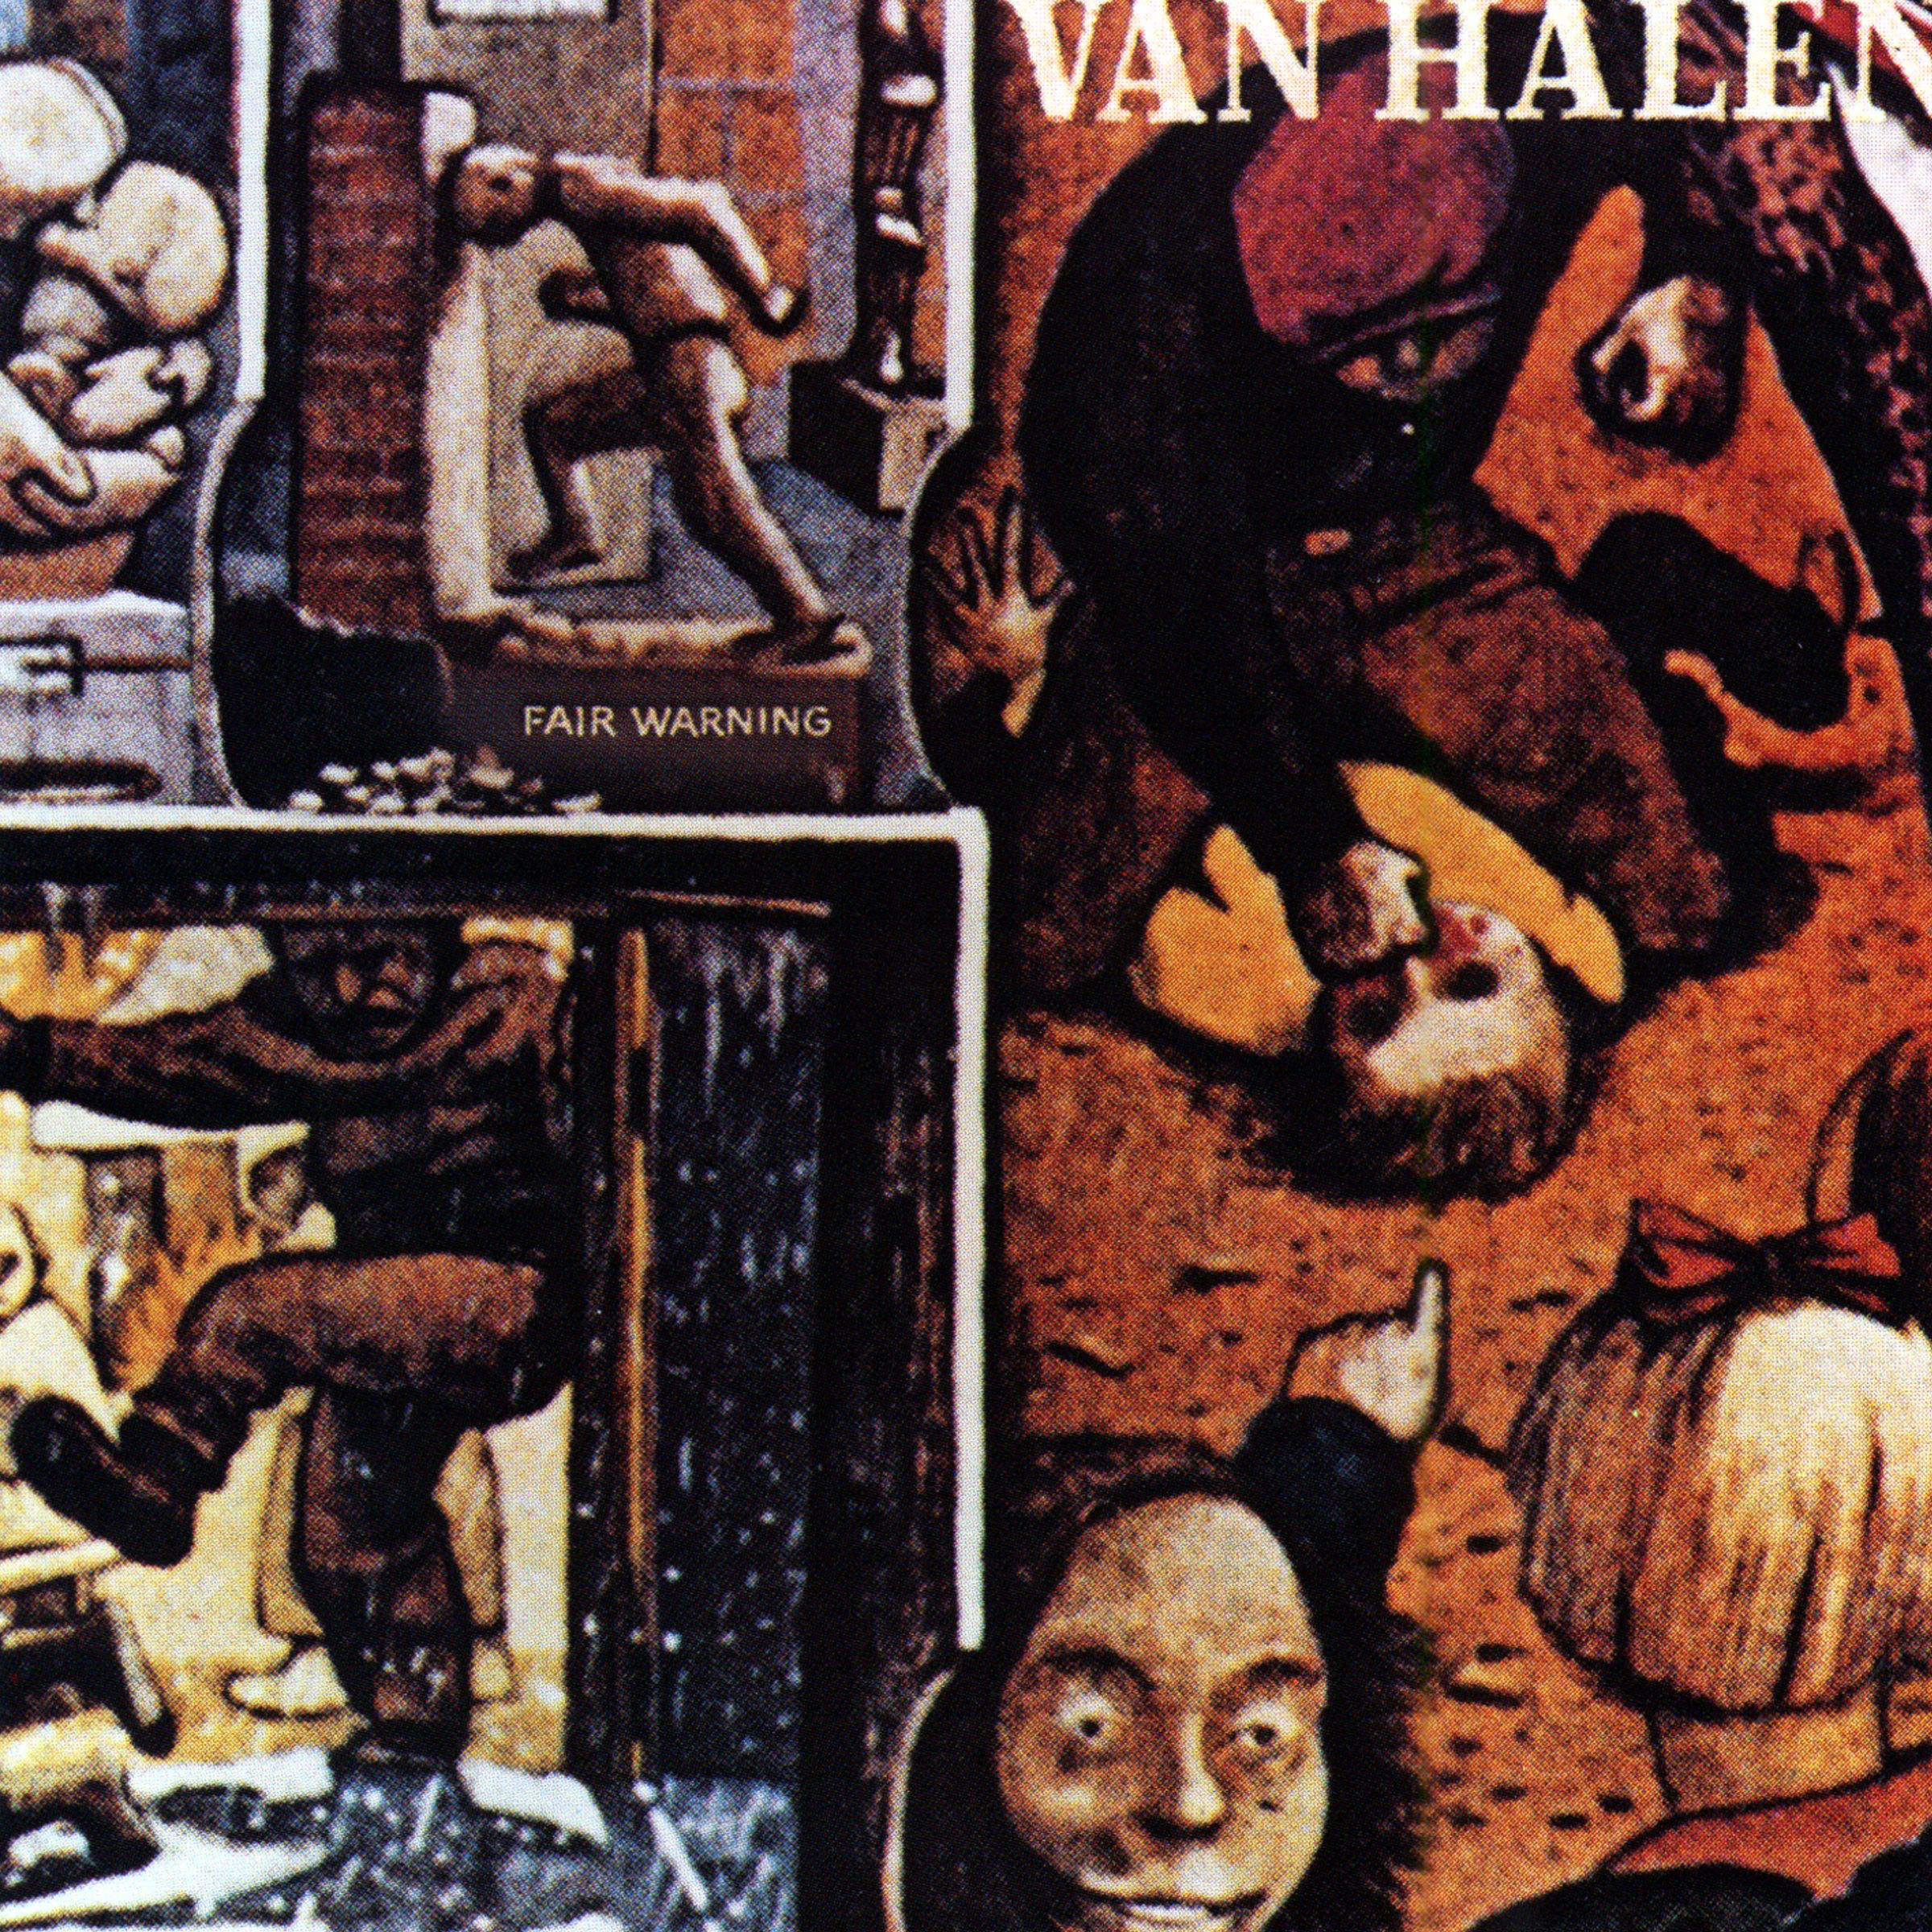 Van Halen (ヴァン・ヘイレン) 4thアルバム『Fair Warning (戒厳令)』(1981年4月29日発売) 高画質CDジャケット画像 (ジャケ写)